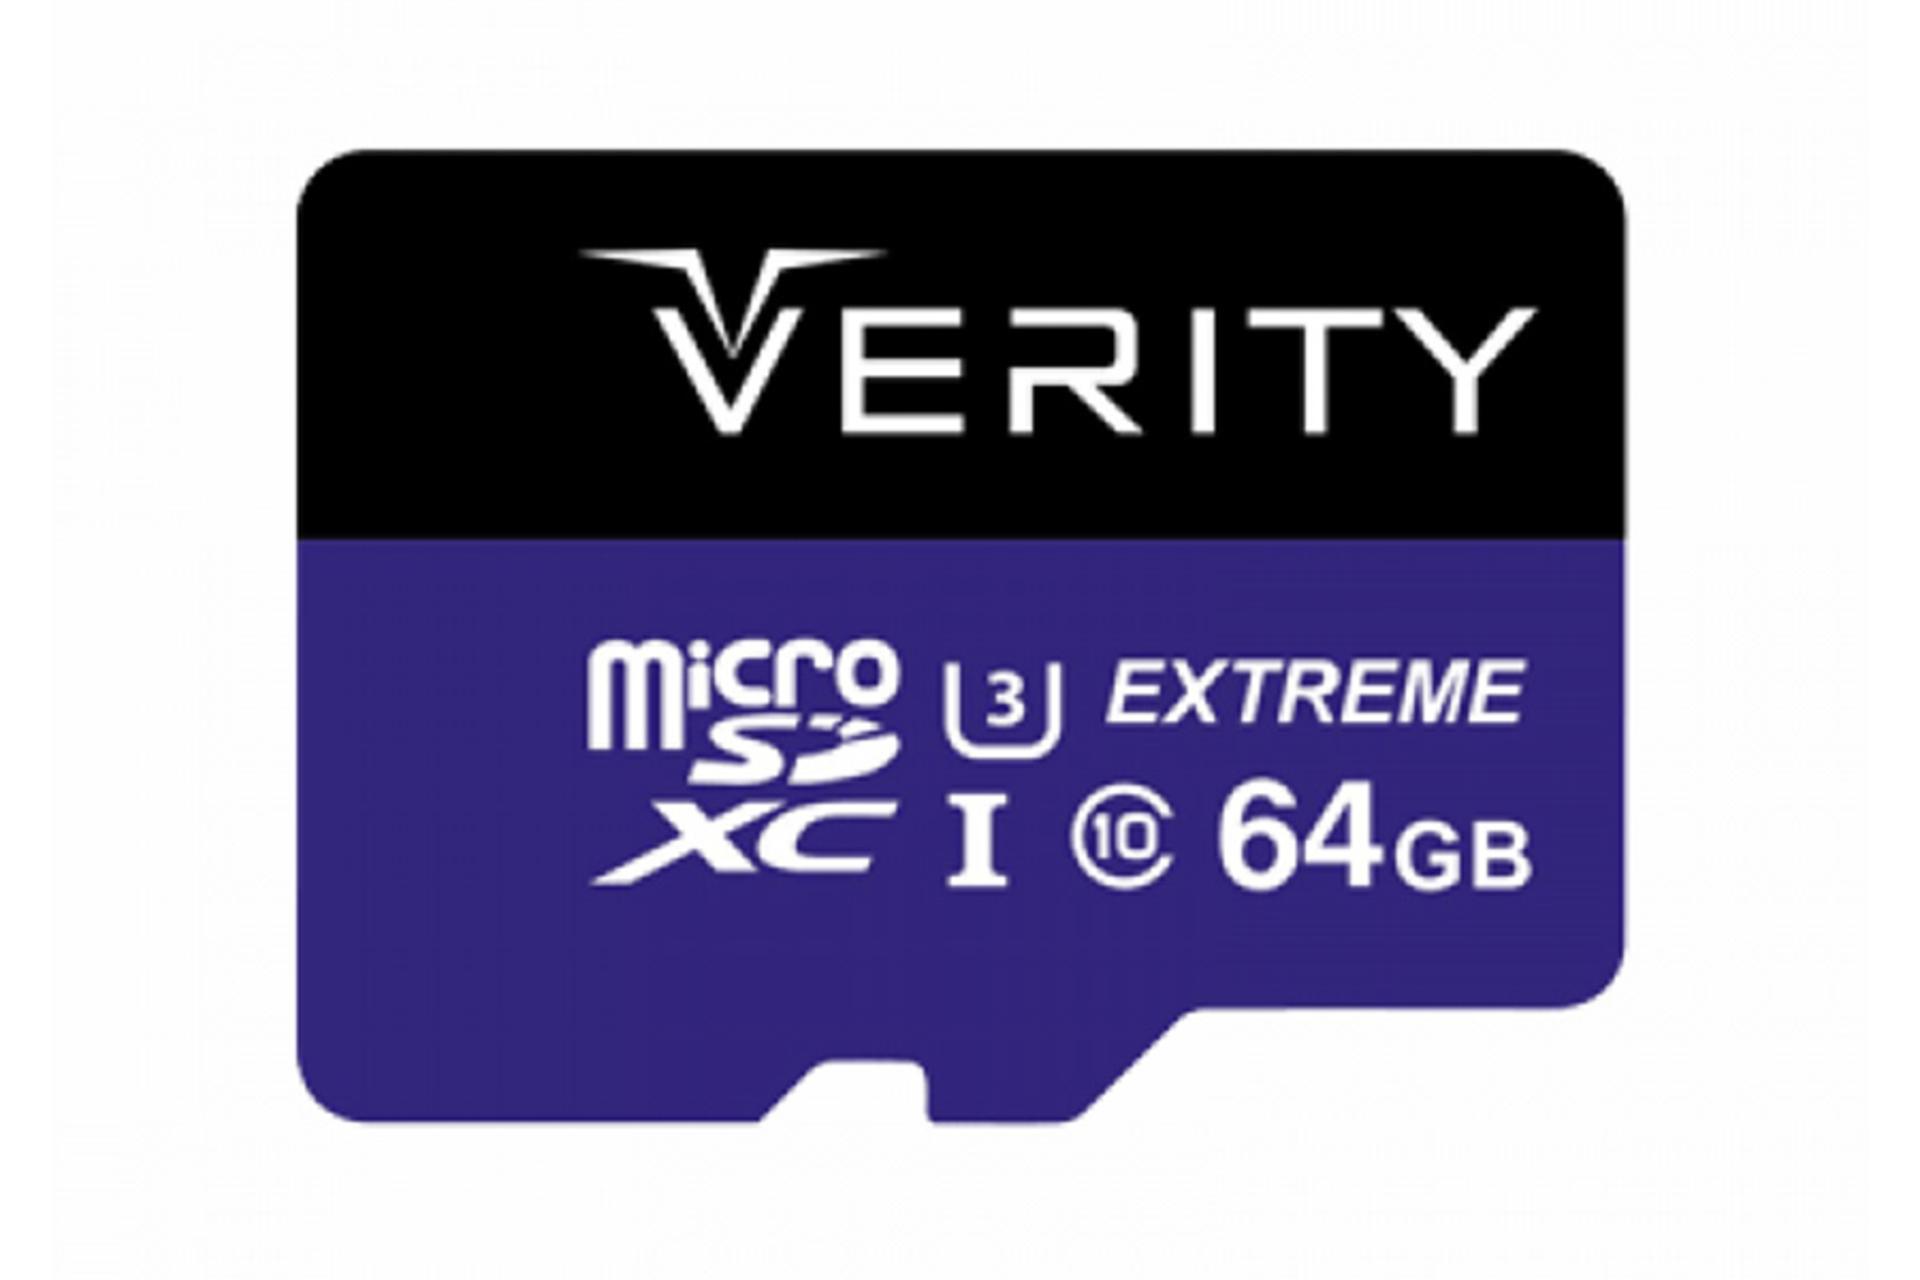 کارت حافظه وریتی Verity 533x microSDXC Class 10 UHS-I U3 64GB